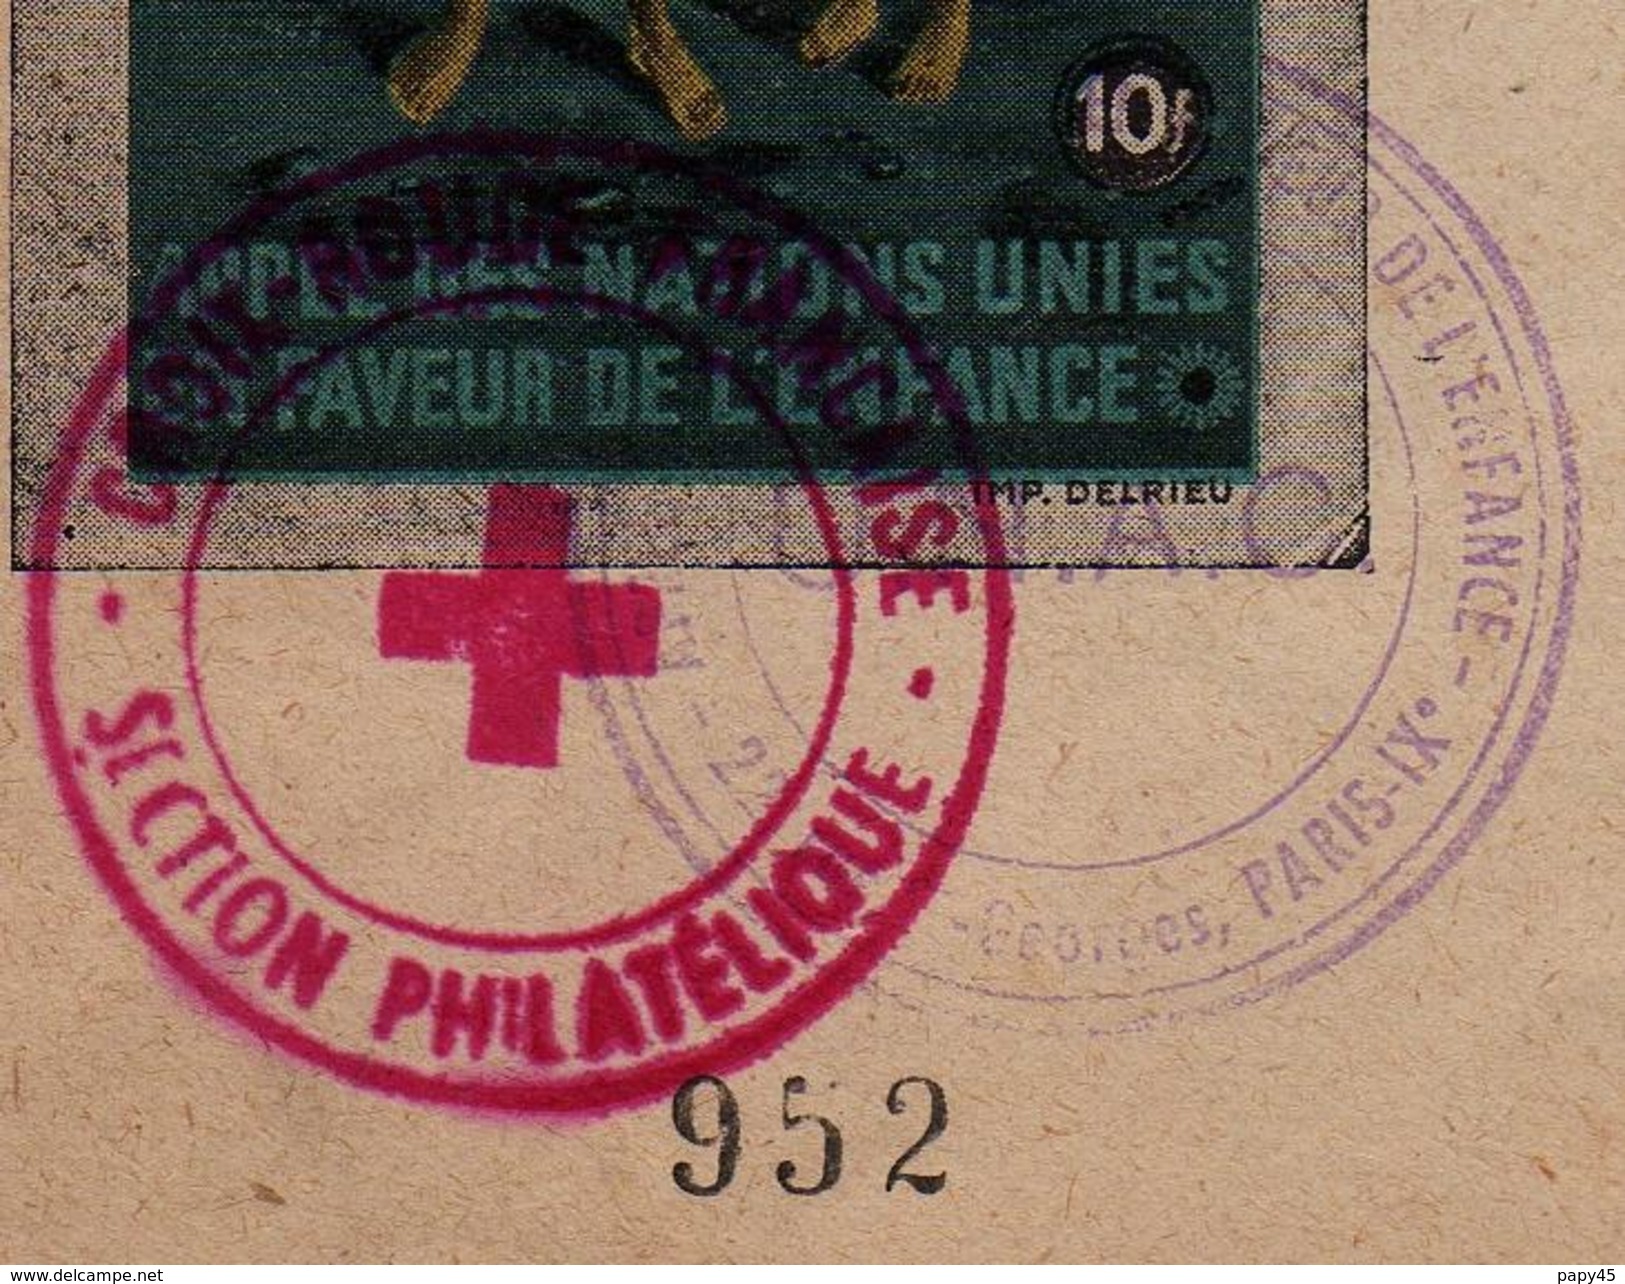 APPEL  DES NATIONS UNIES EN FAVEUR DE L' ENFANCE   MAI 1948 - 22 Rue Georges Paris IXè - Croix Rouge Française - U N A C - Croix Rouge